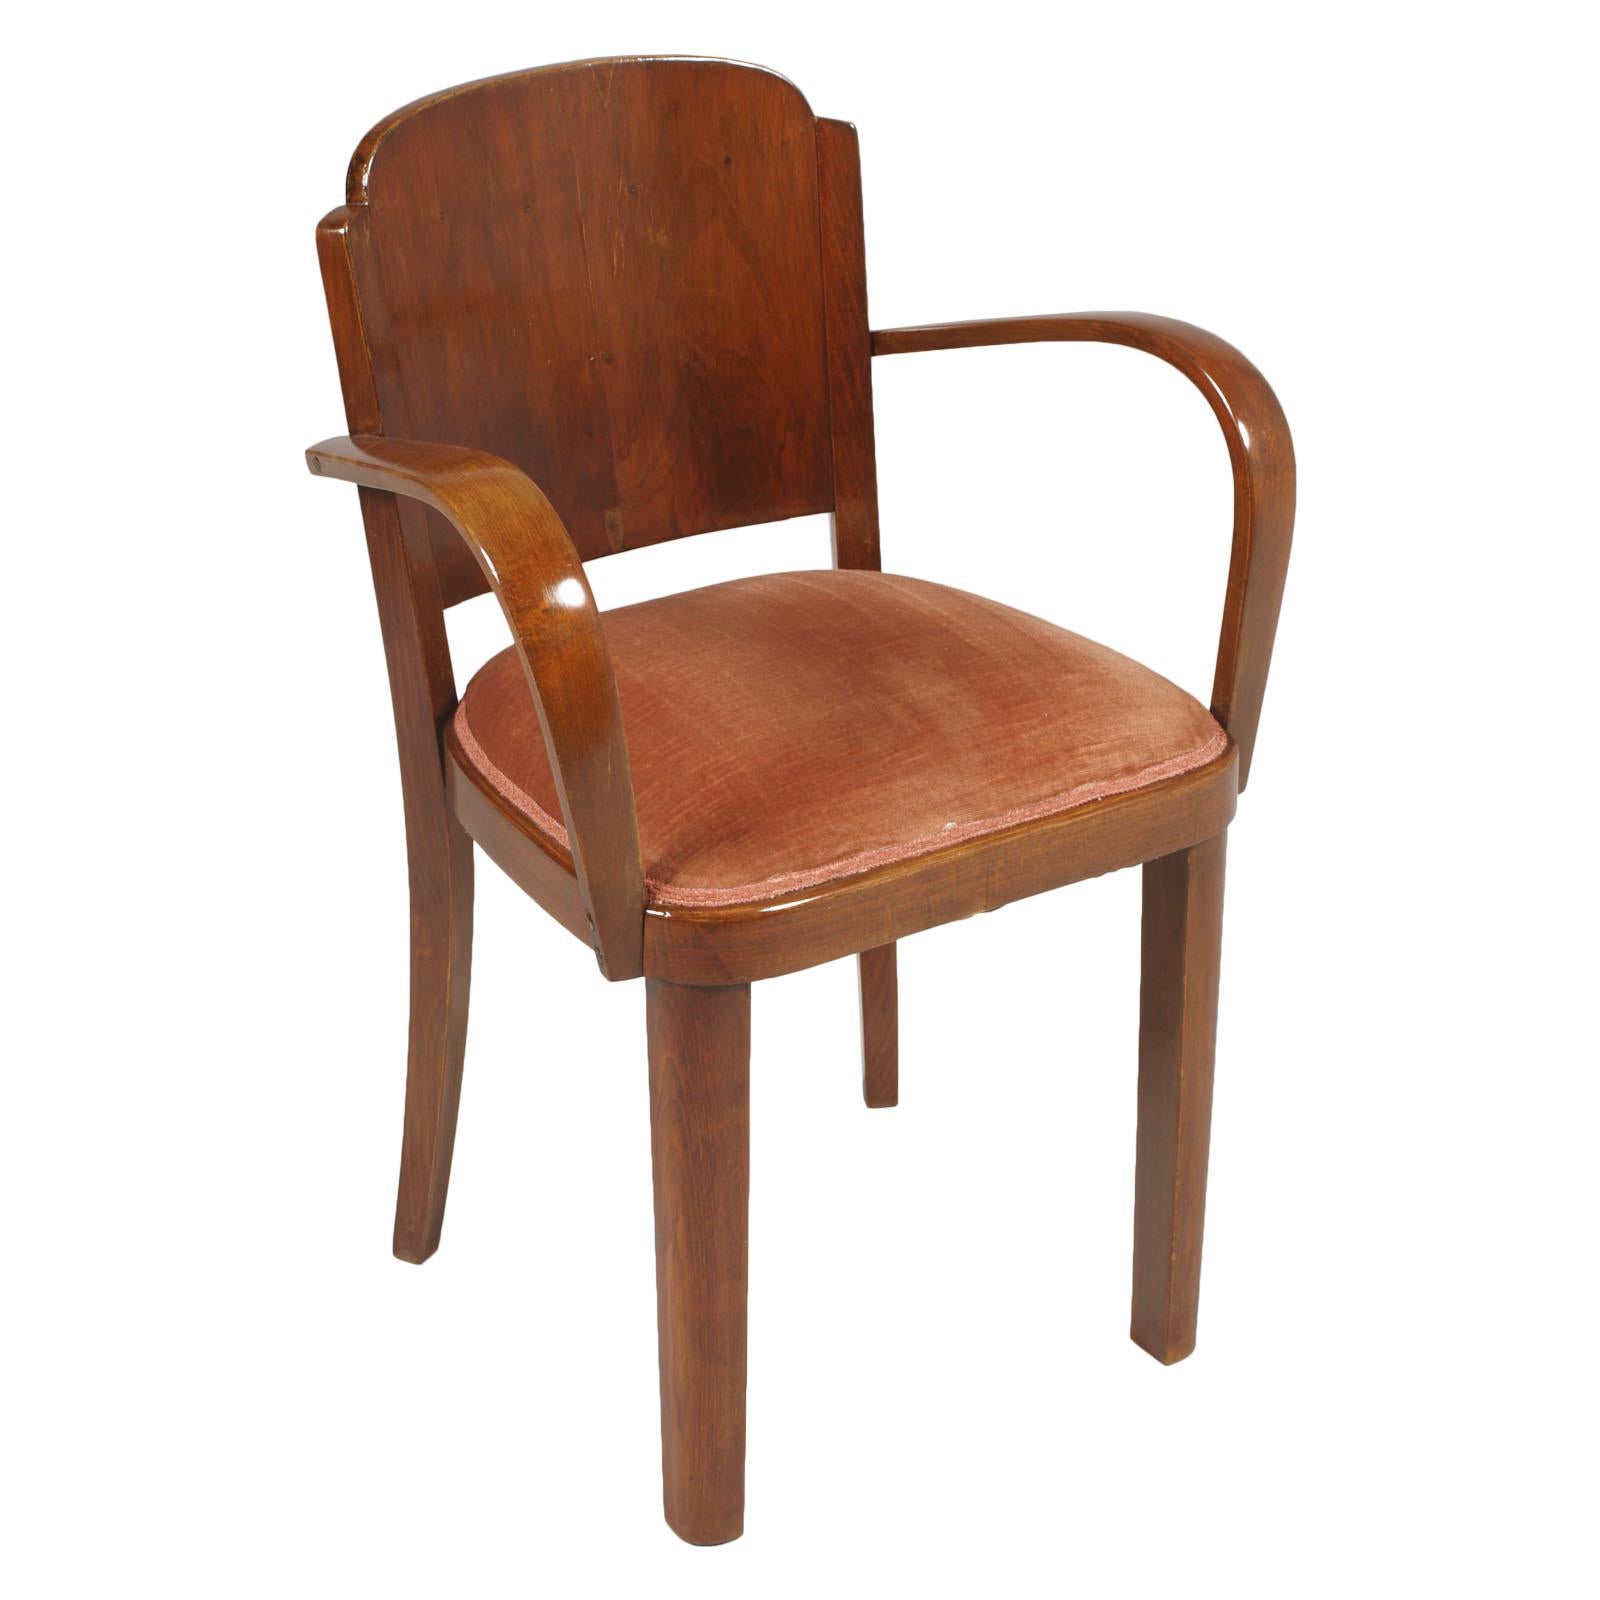 Restaurierte und mit Wachs polierte italienische Art Deco Armlehnenstühle, mit Federsitz, mit Samt bezogen in gutem Zustand, Gaetano Borsani zugeschrieben. Robust und elegant.
Auf Anfrage können wir die neue Polsterung nach Maß mit einem Aufpreis